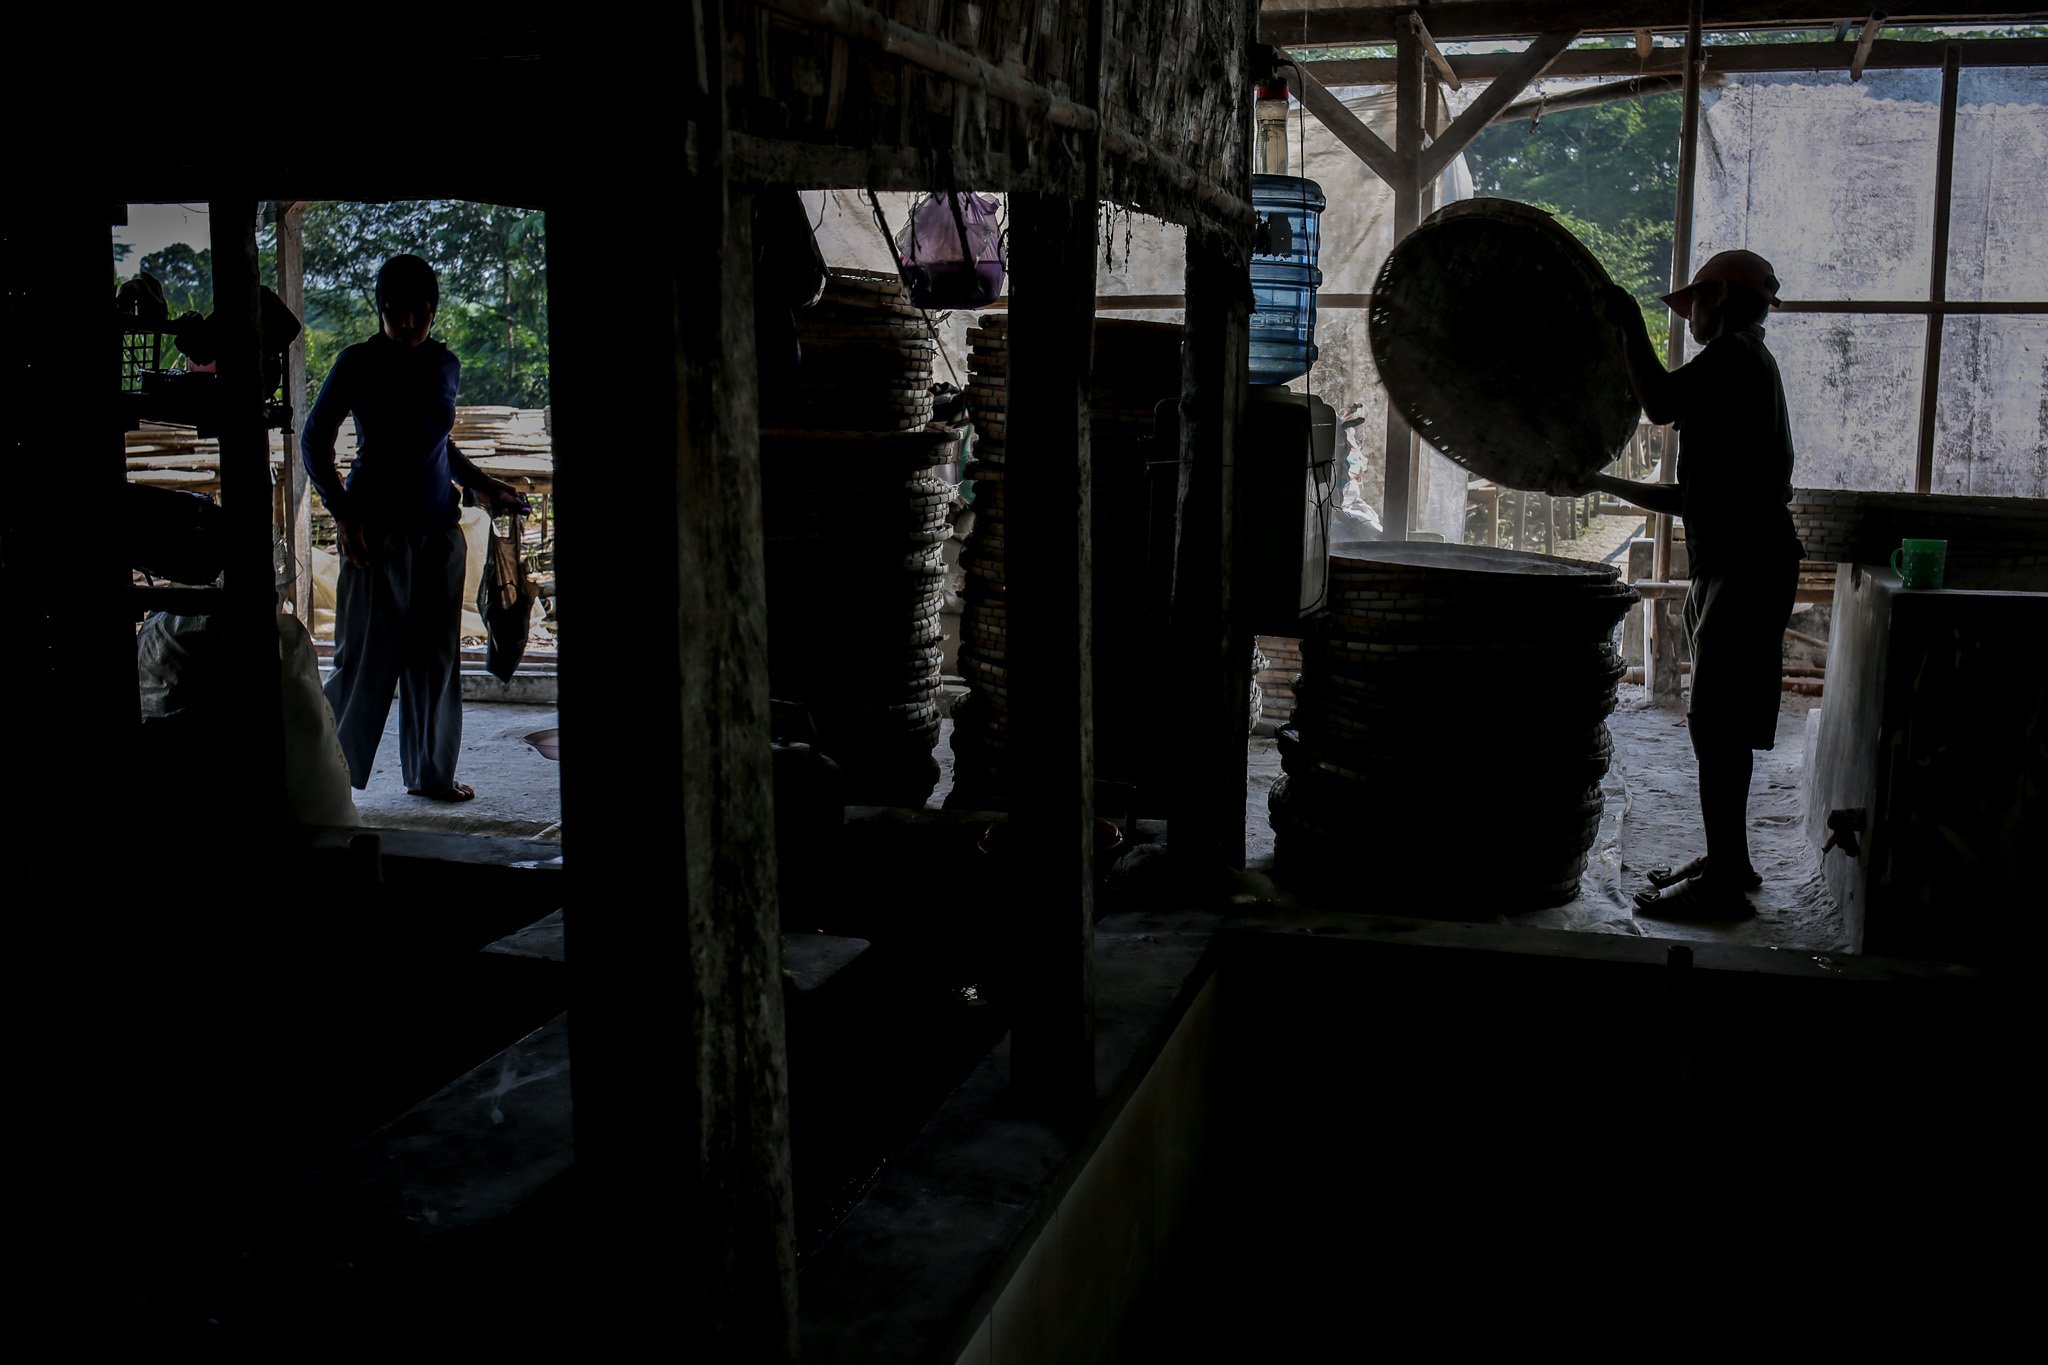 Pekerja menyelesaikan pembuatan tepung tapioka di Industri Rumahan Kawasan Legok Nyenang, Kadumanggu, Kabupaten Bogor, Minggu (1/8/2021). Di lahan seluas 1,5 hektar pekerja mampu menghasilkan 3 - 4 ton dalam sehari dengan upah Rp. 40.000 perharinya.